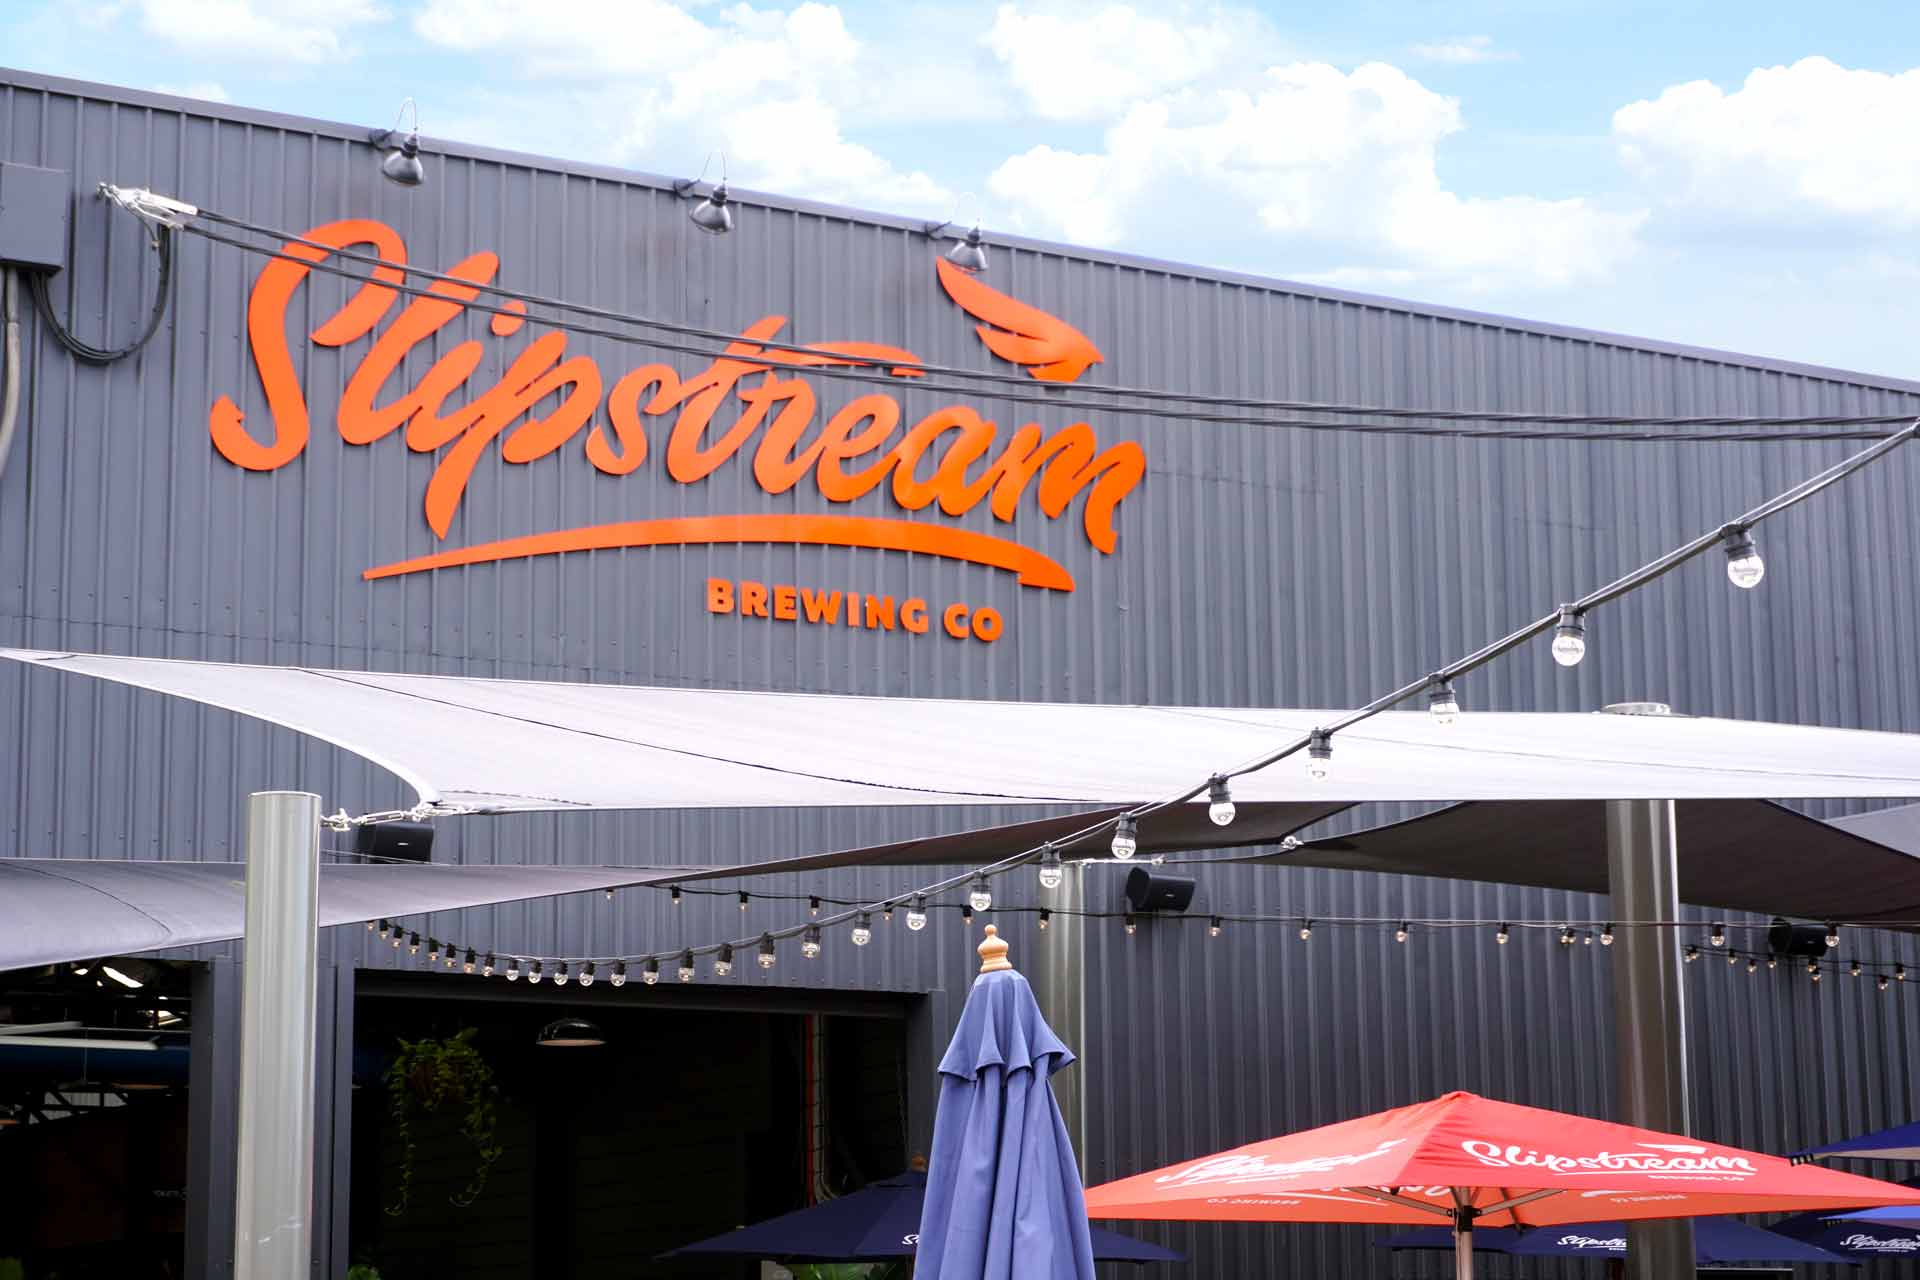 slipstream brewery in brisbane